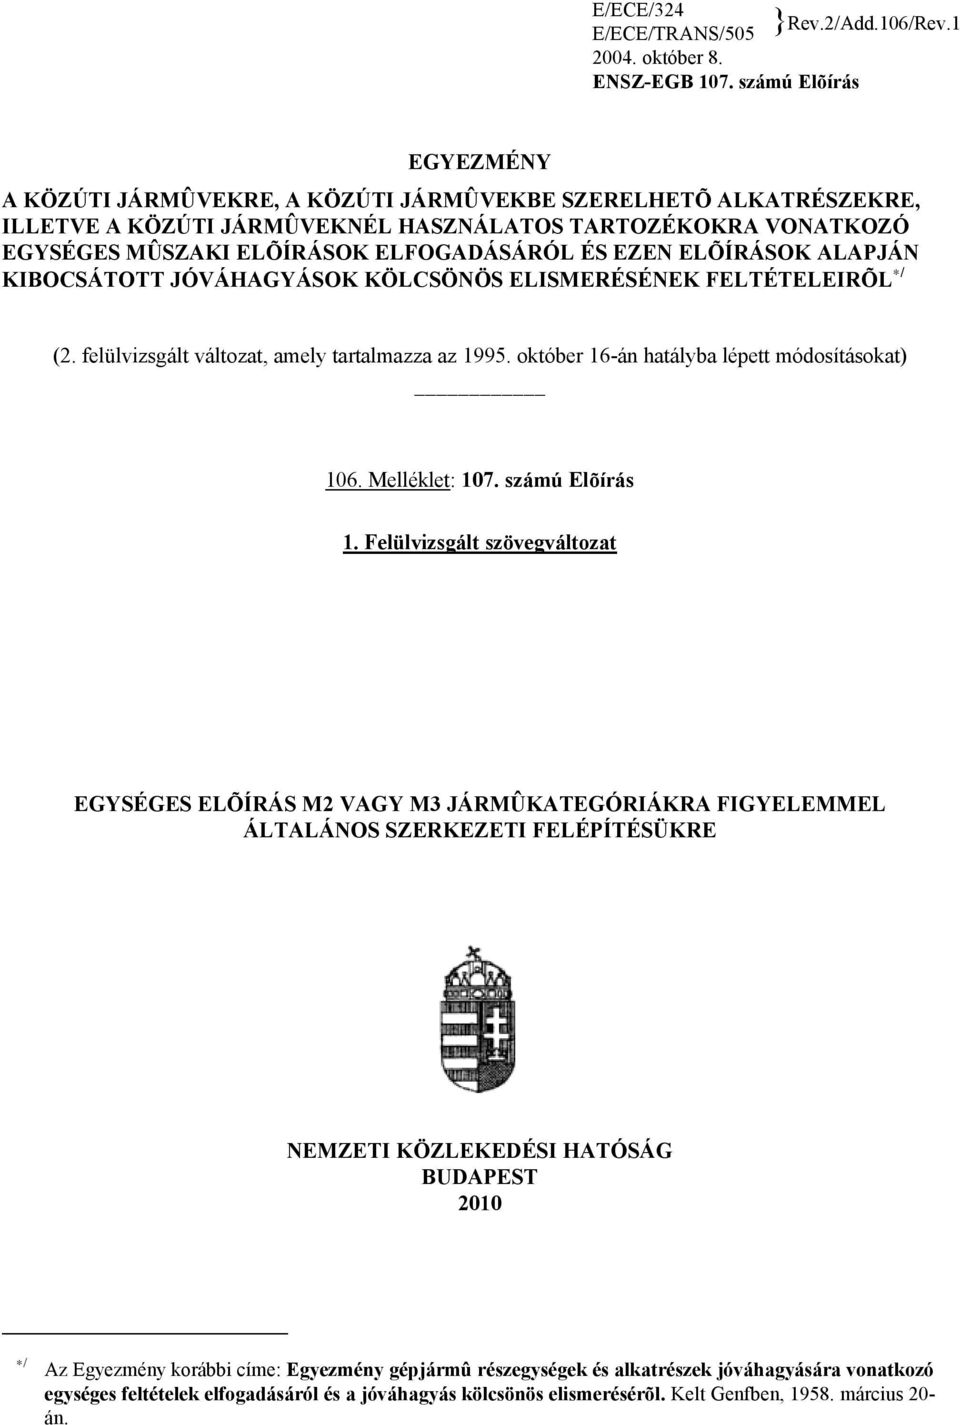 EZEN ELÕÍRÁSOK ALAPJÁN KIBOCSÁTOTT JÓVÁHAGYÁSOK KÖLCSÖNÖS ELISMERÉSÉNEK FELTÉTELEIRÕL */ (2. felülvizsgált változat, amely tartalmazza az 1995. október 16-án hatályba lépett módosításokat) 106.